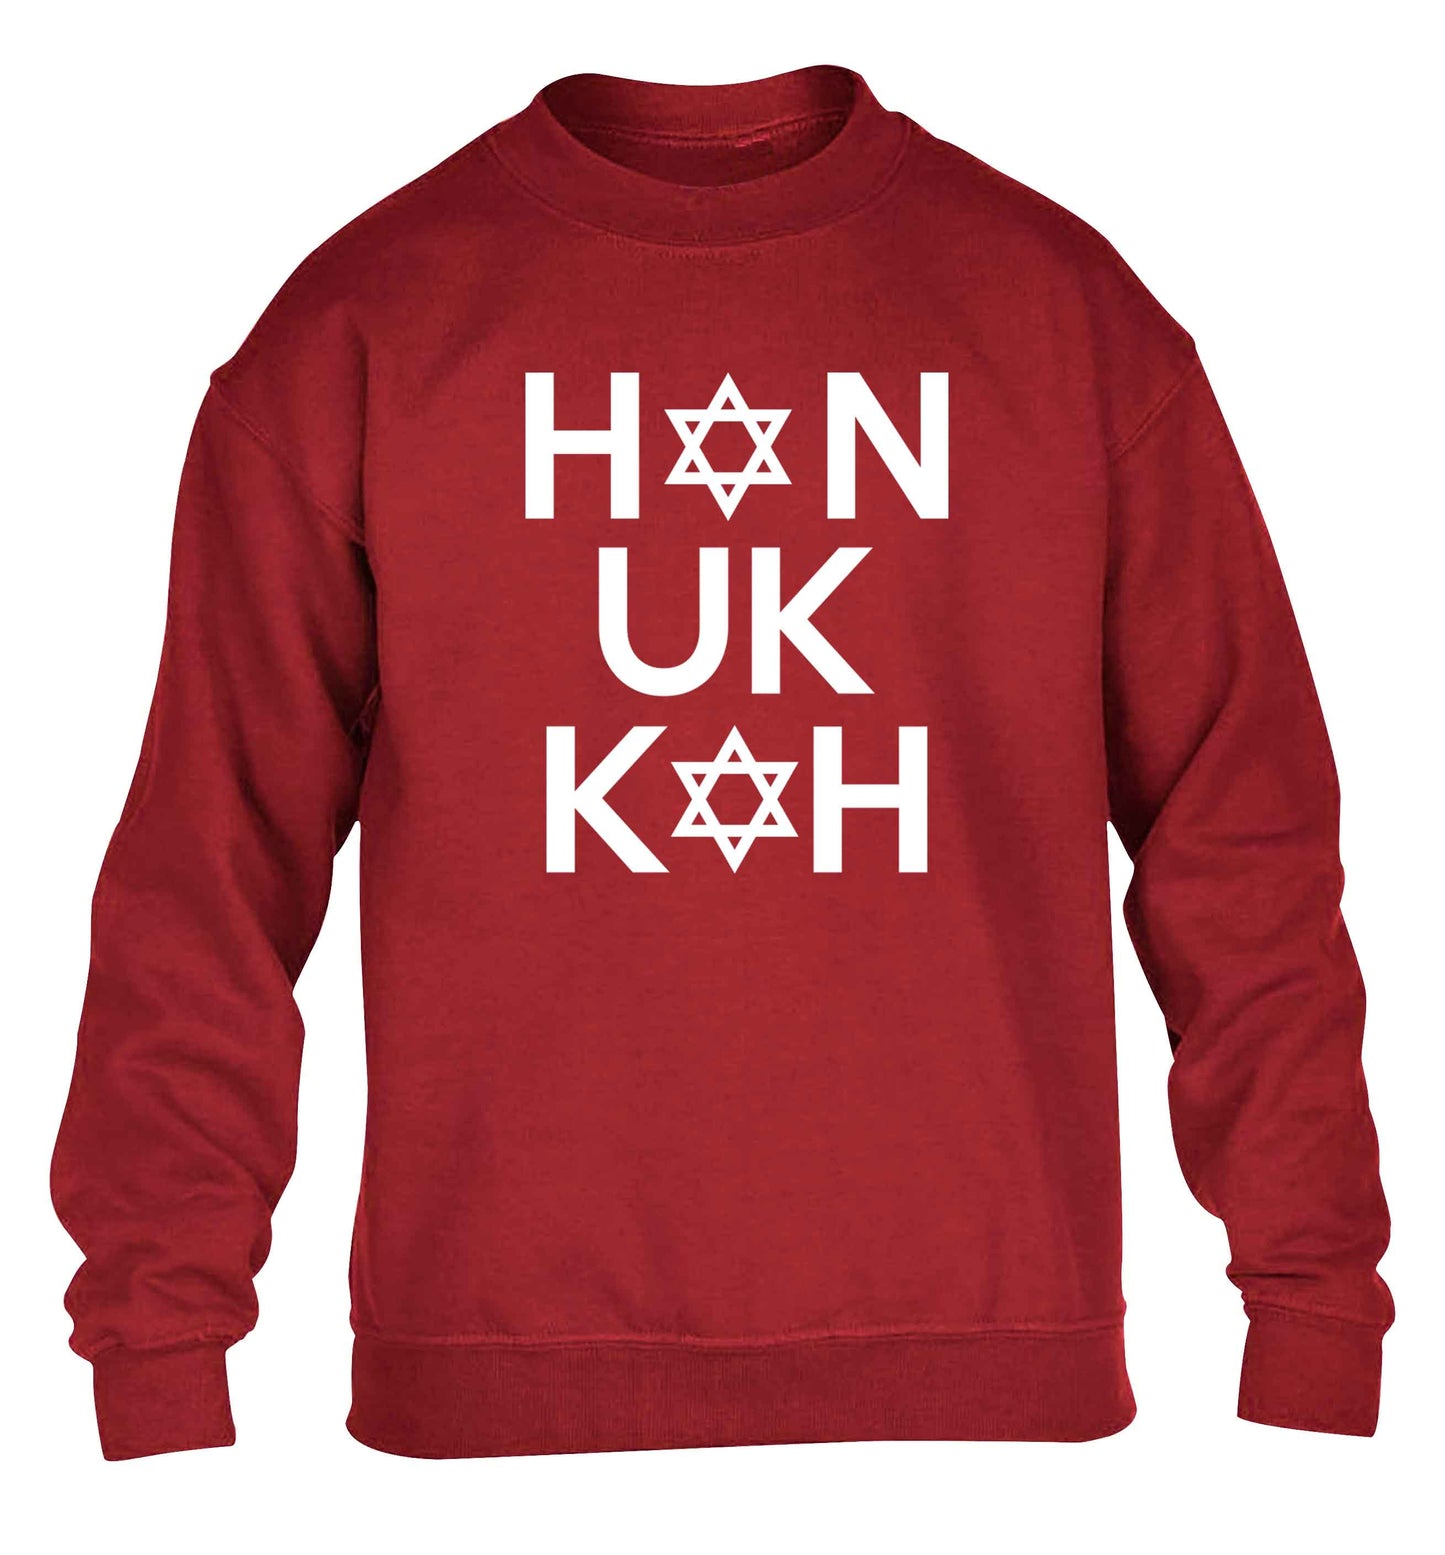 Han uk kah  Hanukkah star of david children's grey sweater 12-13 Years